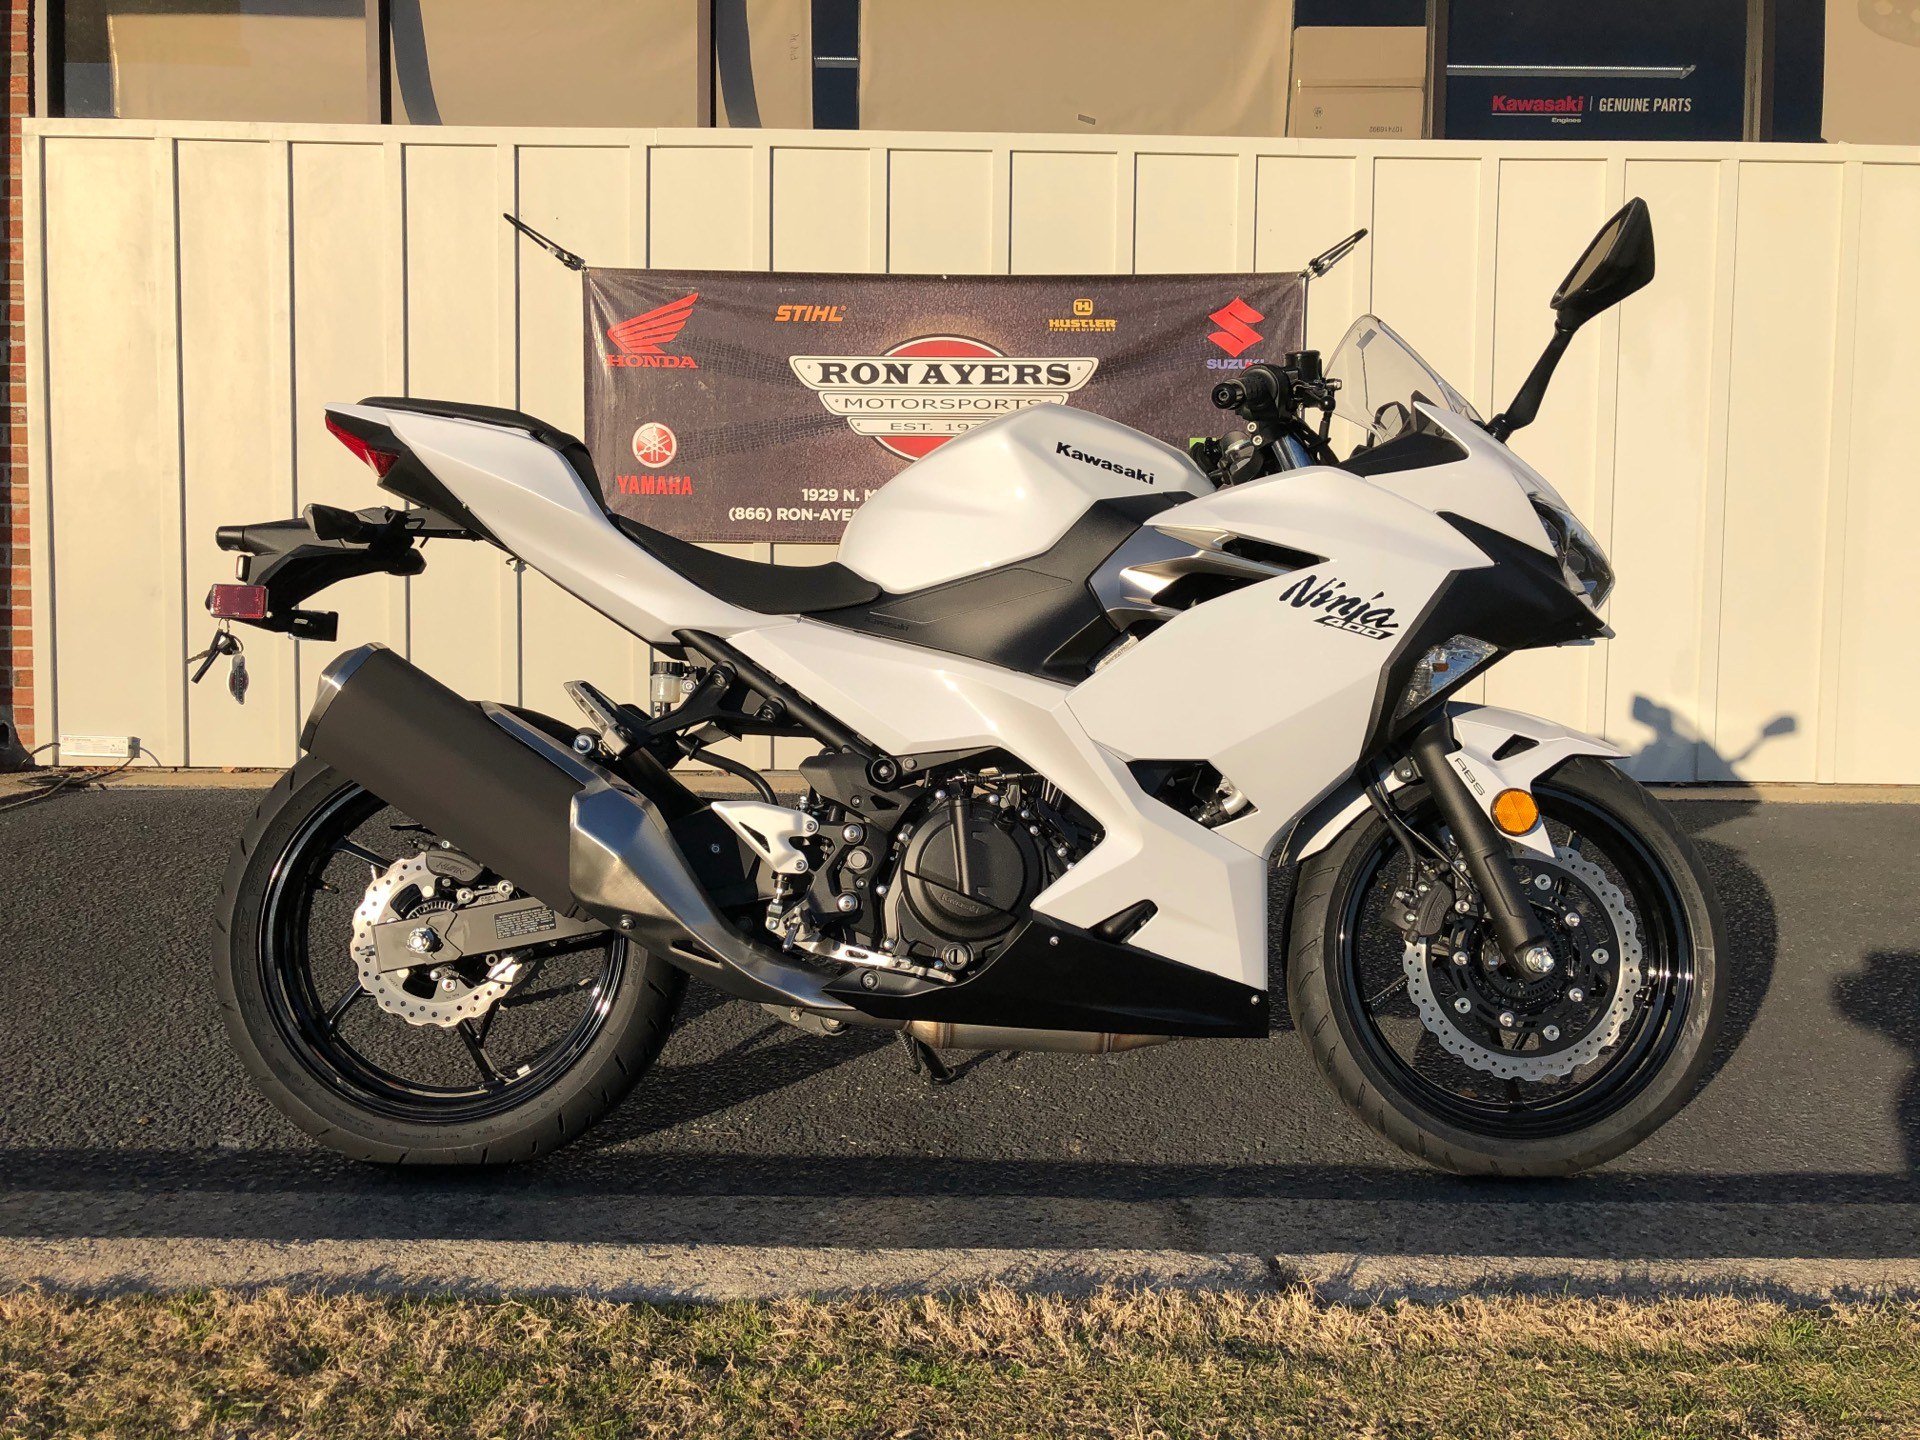 New 2020 Kawasaki Ninja 400 ABS Motorcycles in Greenville, NC | Stock ...